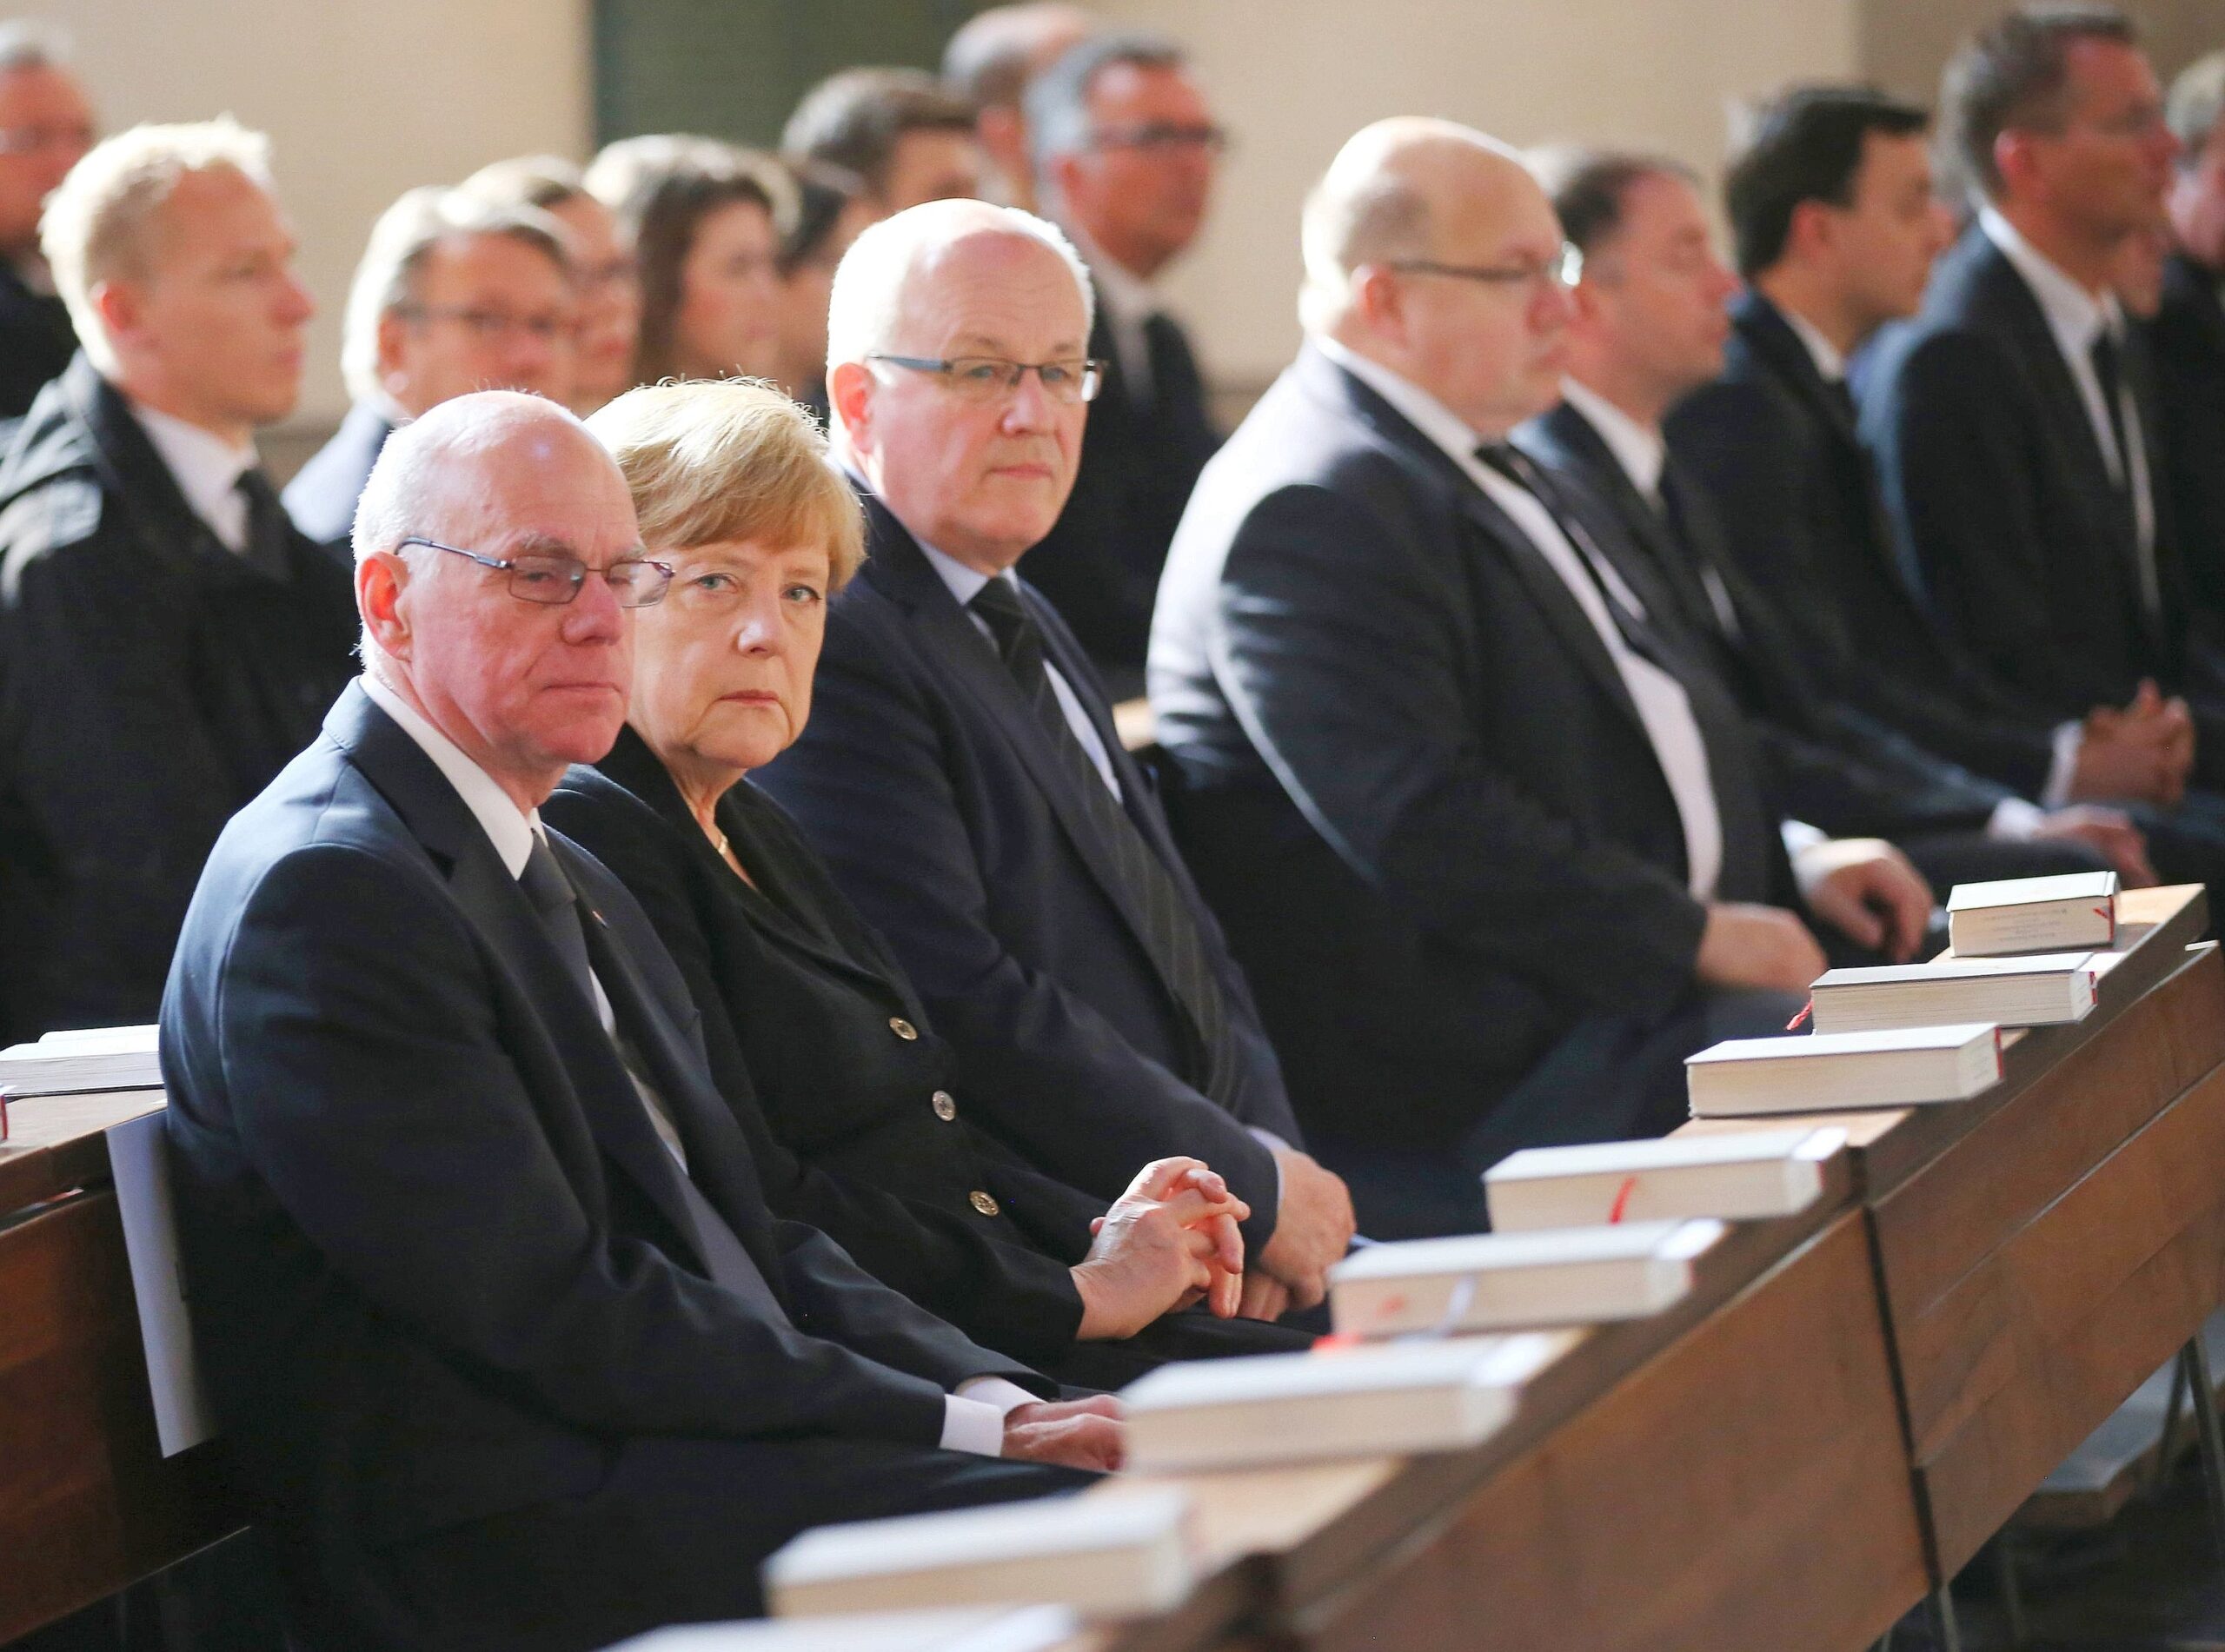 Geschlossen nahmen die CDU-Politiker von ihrem Parteikollegen Abschied: Norbert Lammert, Angela Merkel, Volker Kauder und Peter Altmaier saßen zusammen in der Totenmesse.